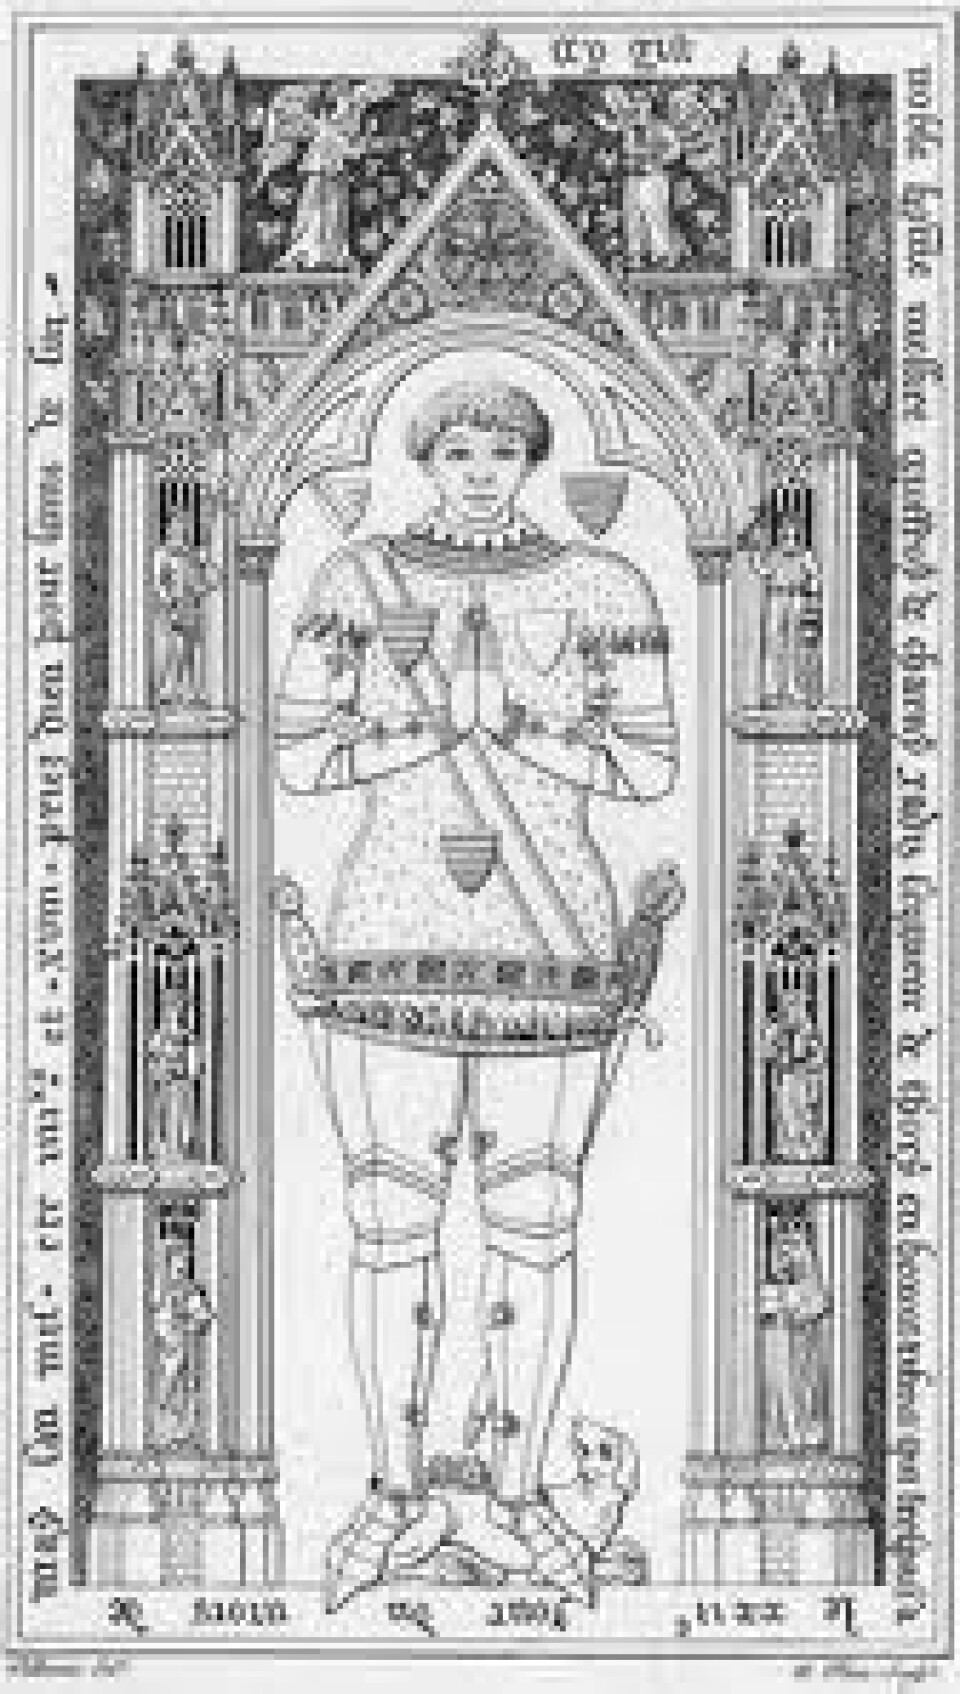 Geoffroi de Charny ble født en gang på begynnelsen av 1300-tallet. (Foto: (Illustrasjon: Effigies & Brasses/Wikimedia Commons))